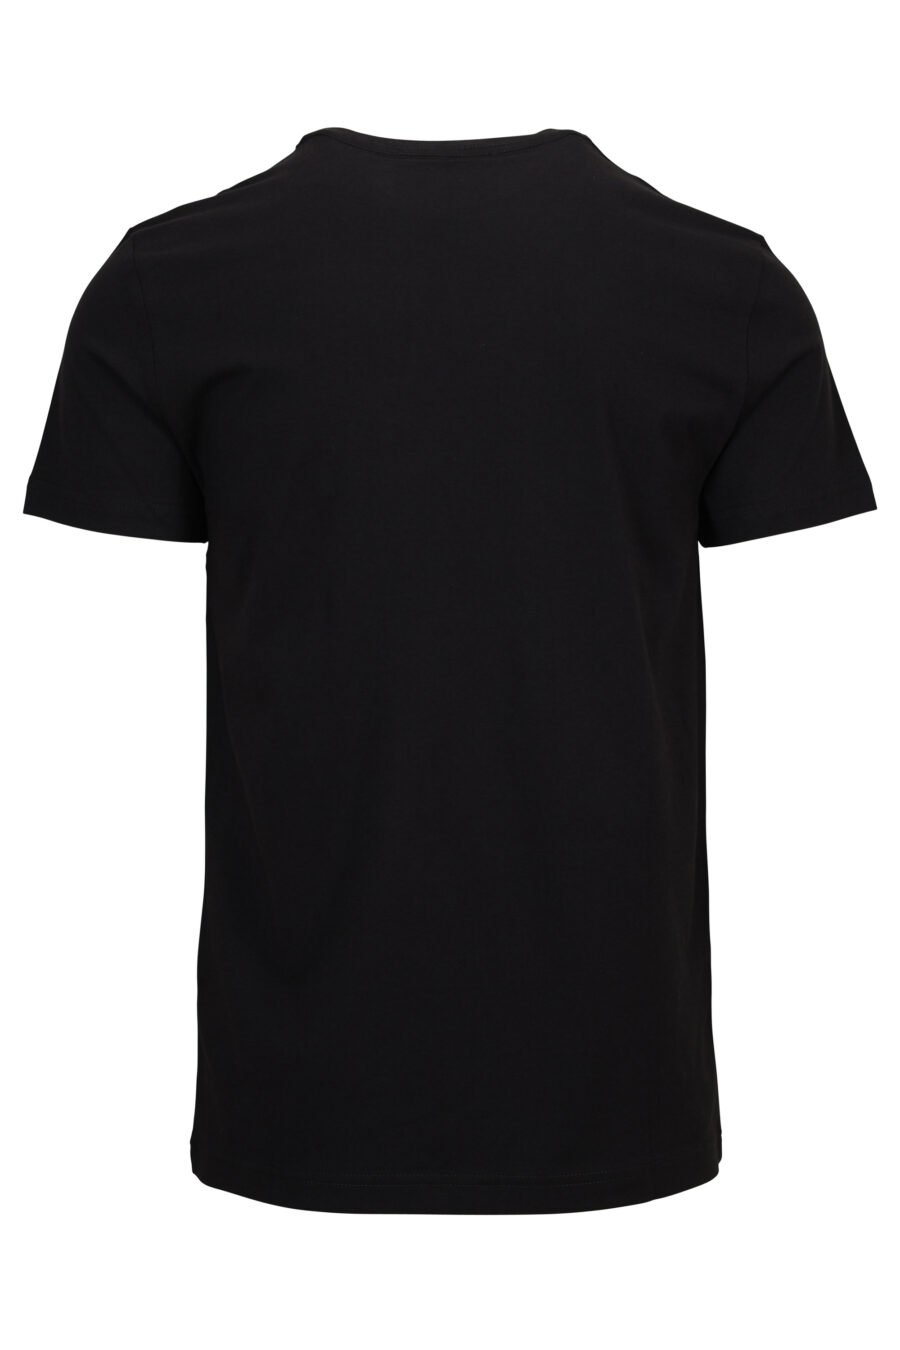 T-shirt noir avec mini-logo circulaire doré et brillant - 8052019597592 1